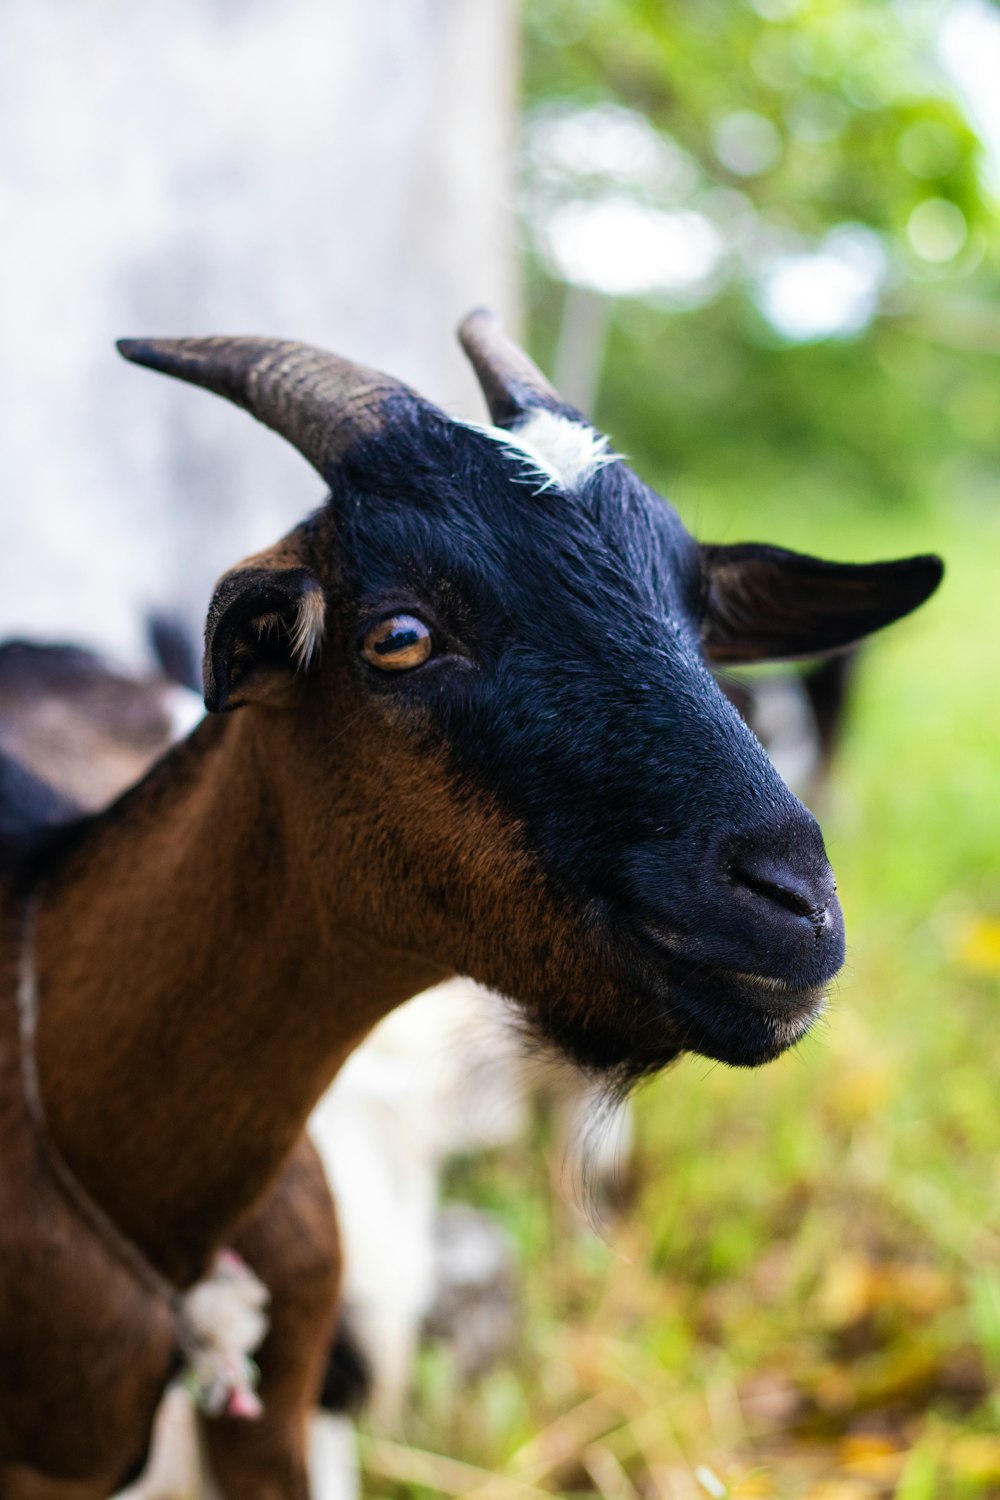 brown and black goat in tilt shift lens